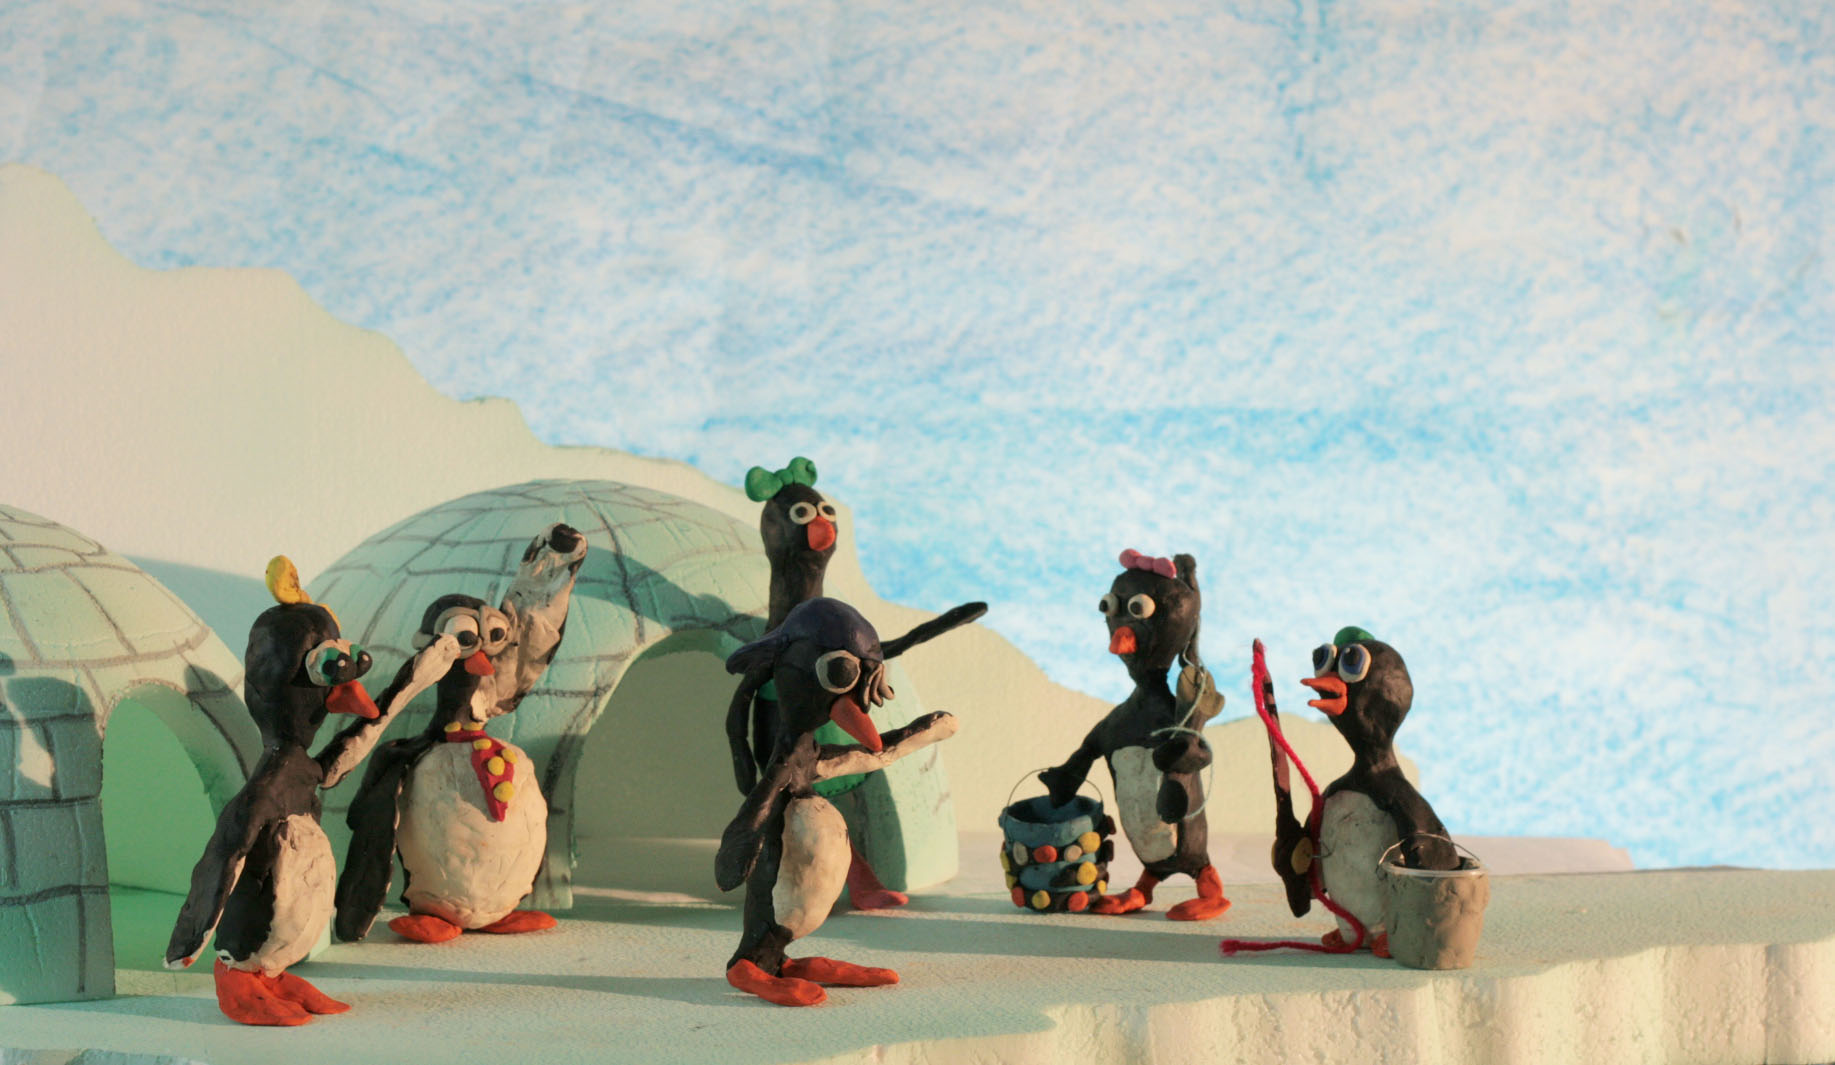 Imagend de Los últimos pingüinos